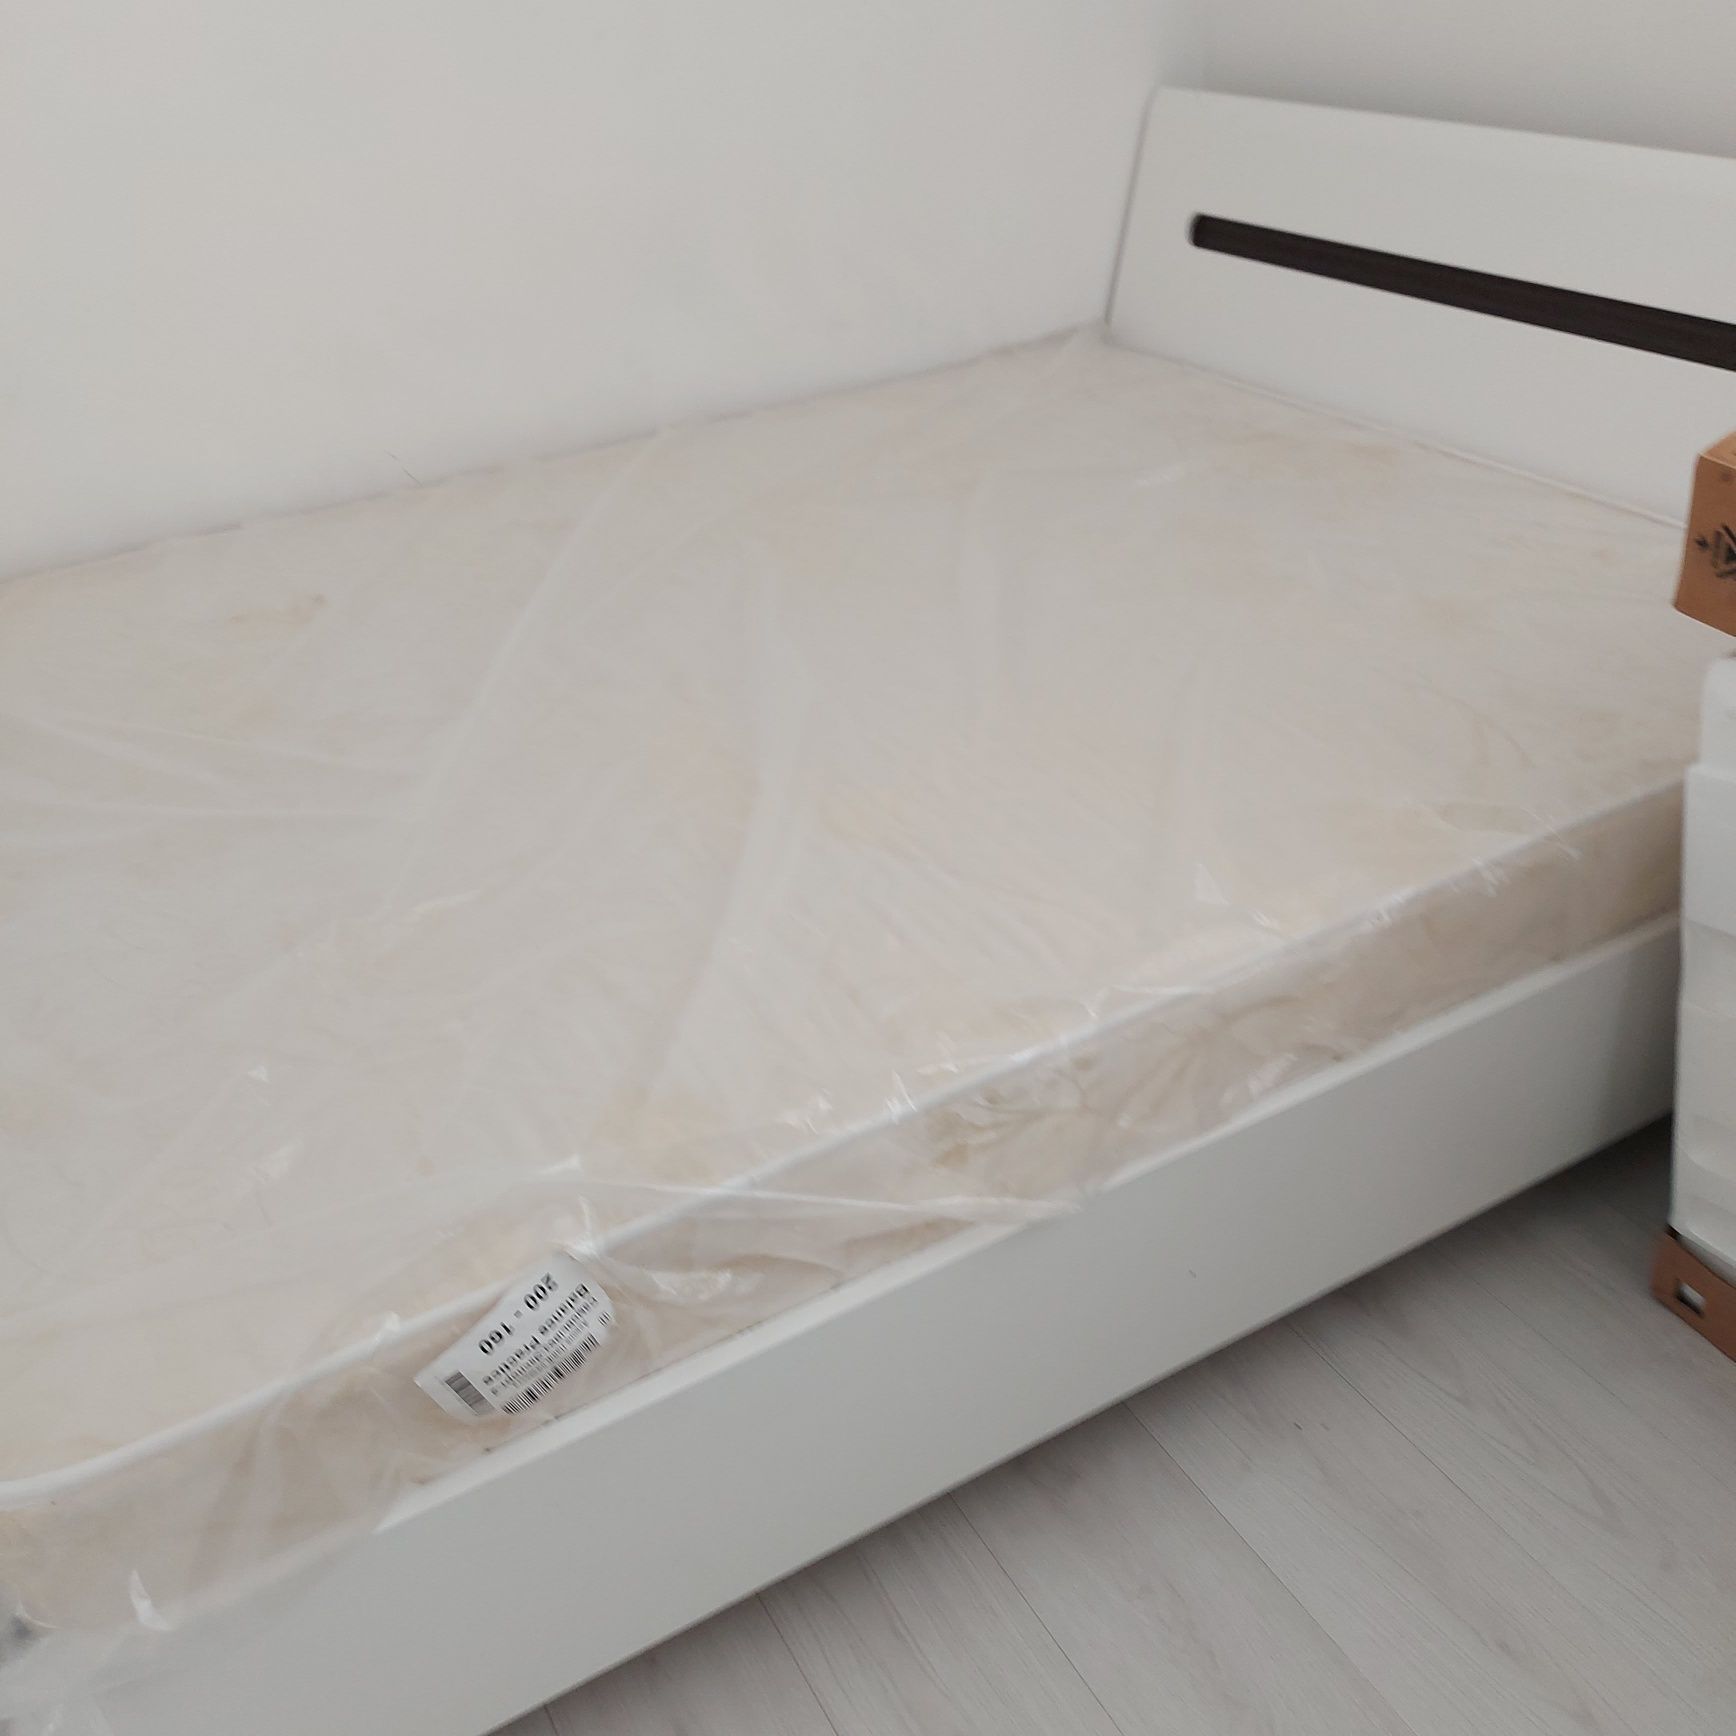 Продаётся евромебель: двуспальная кровать с матрасом